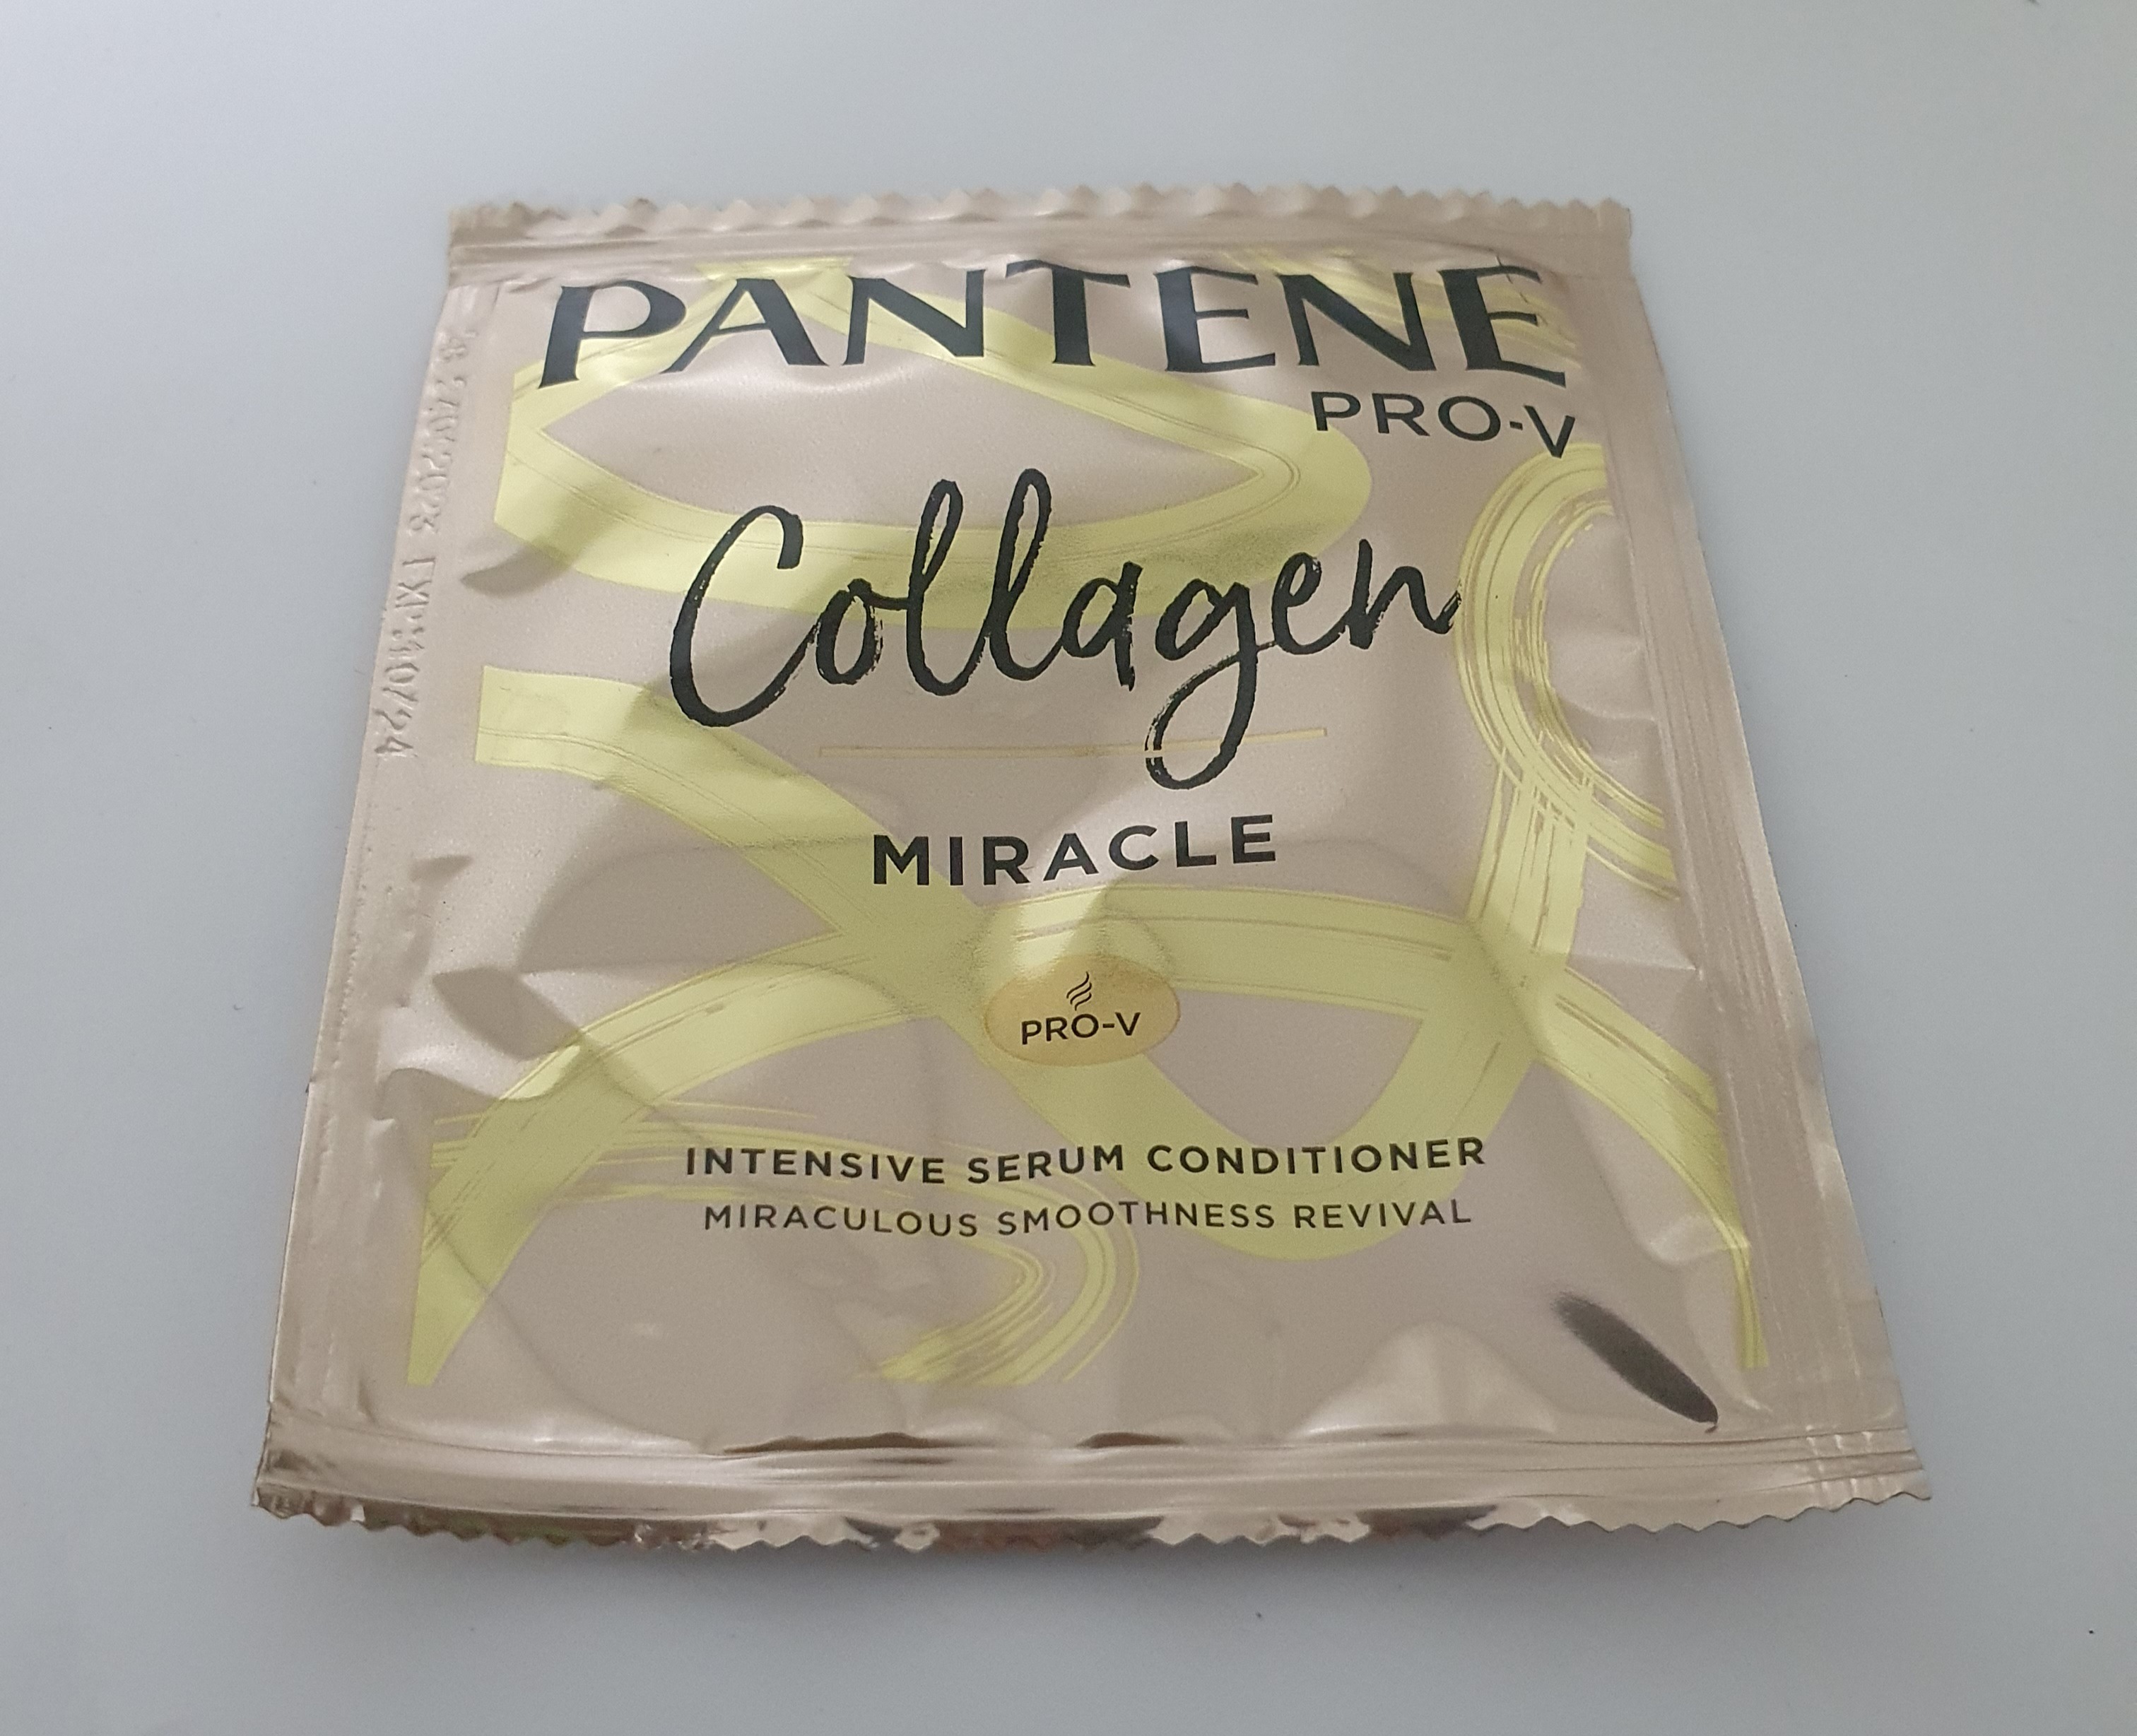 Pantene Collagen Miracle (12 ml)